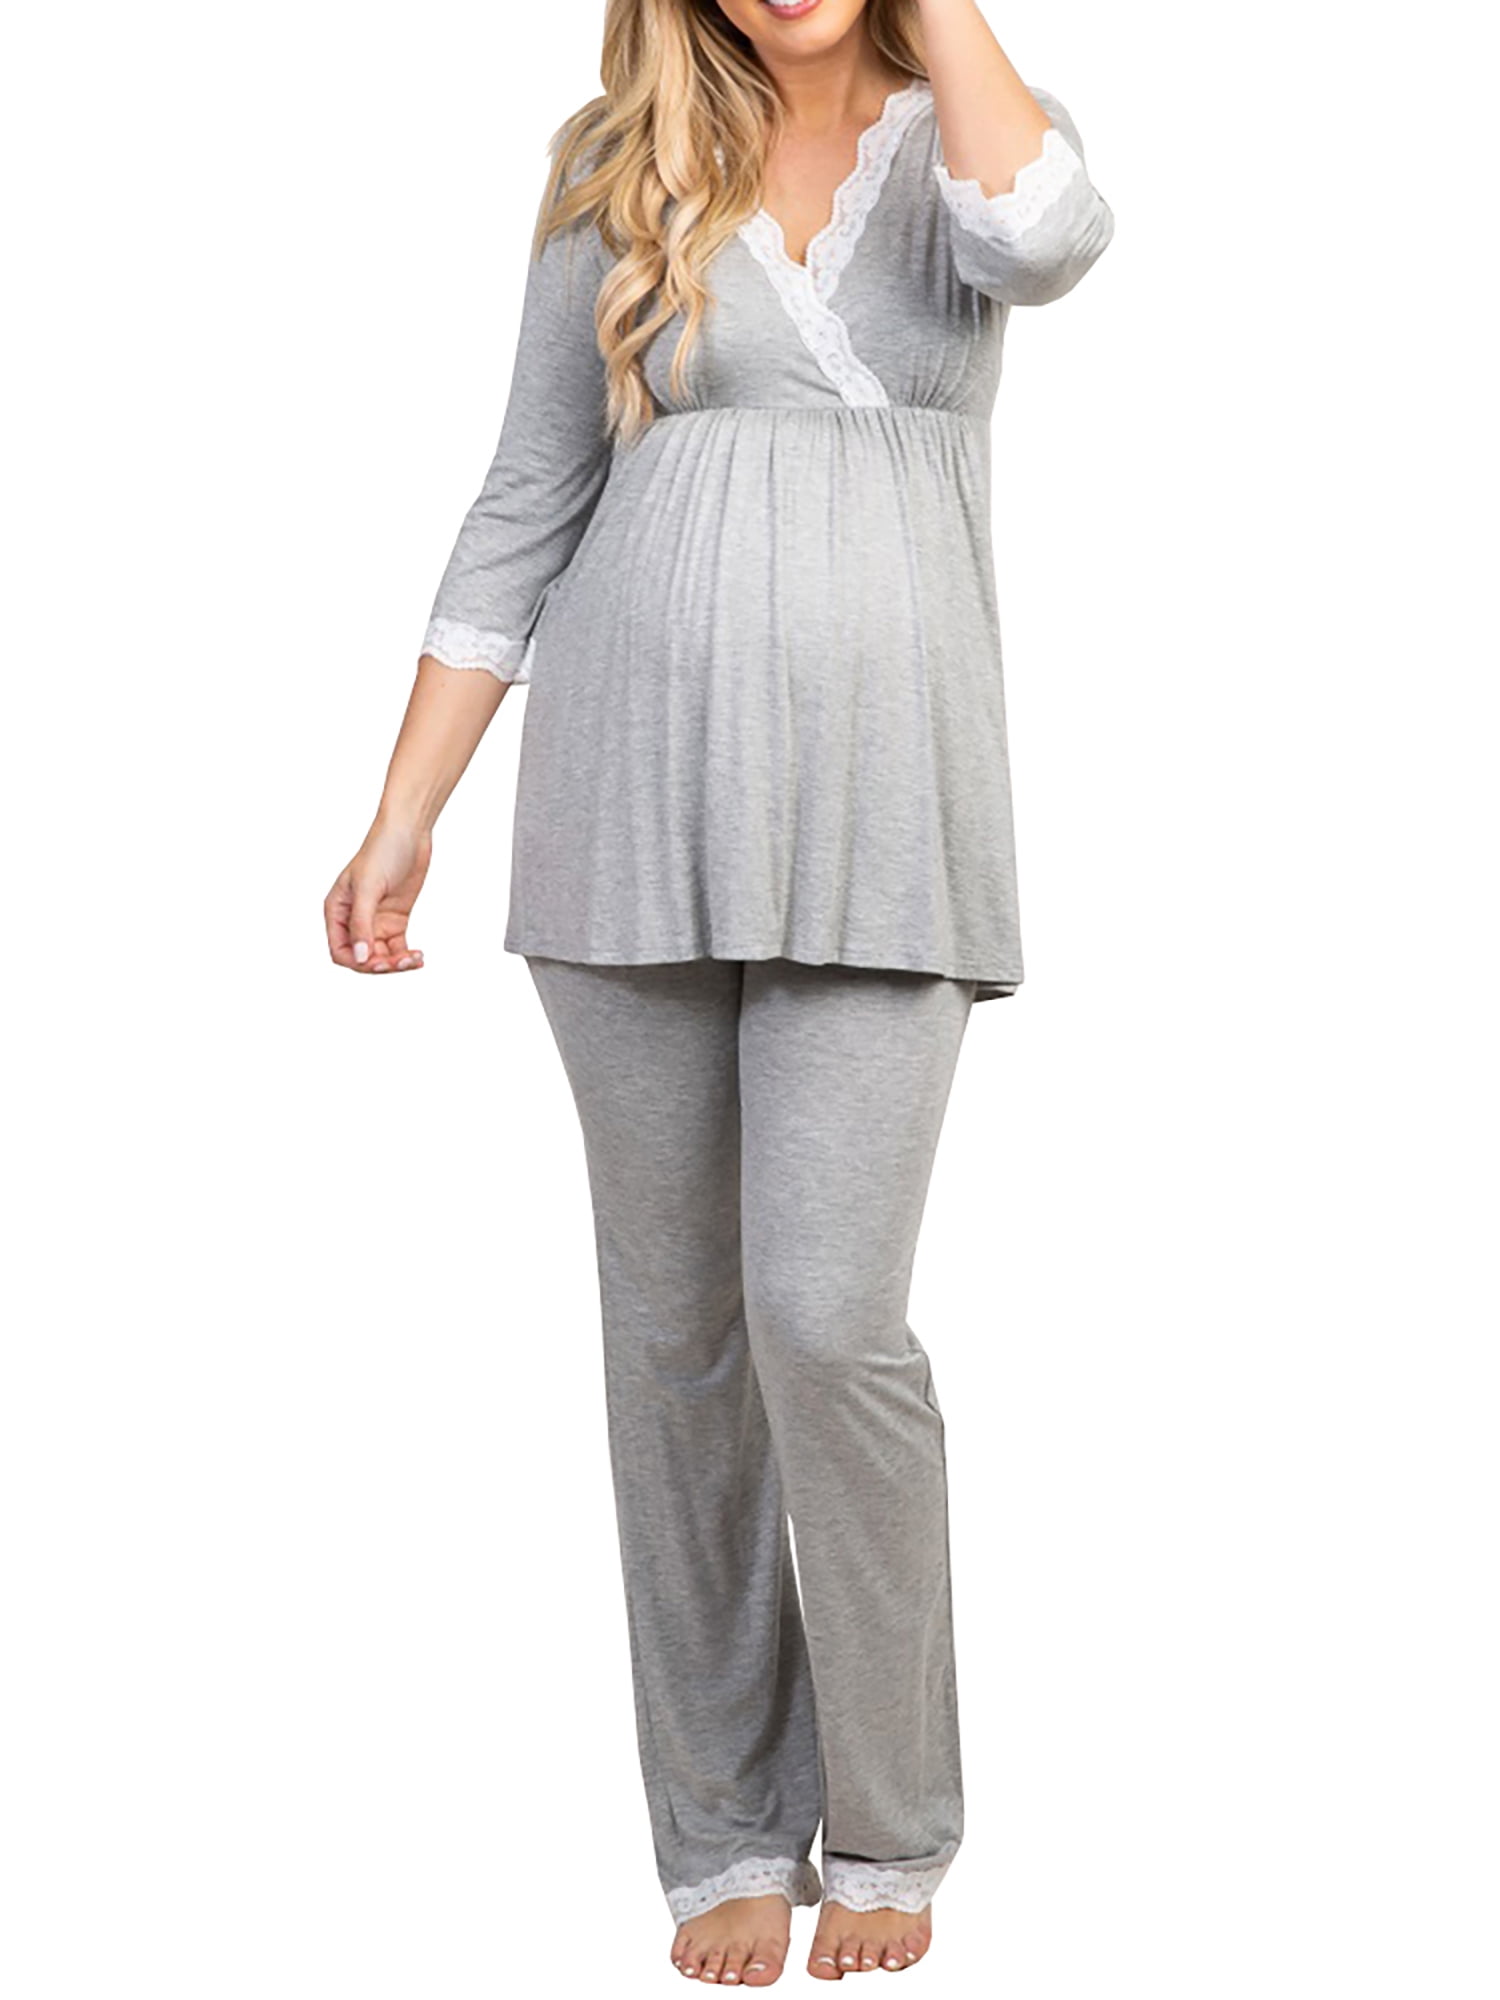 Hema SoftCotton Full Length Maternity Loungewear.